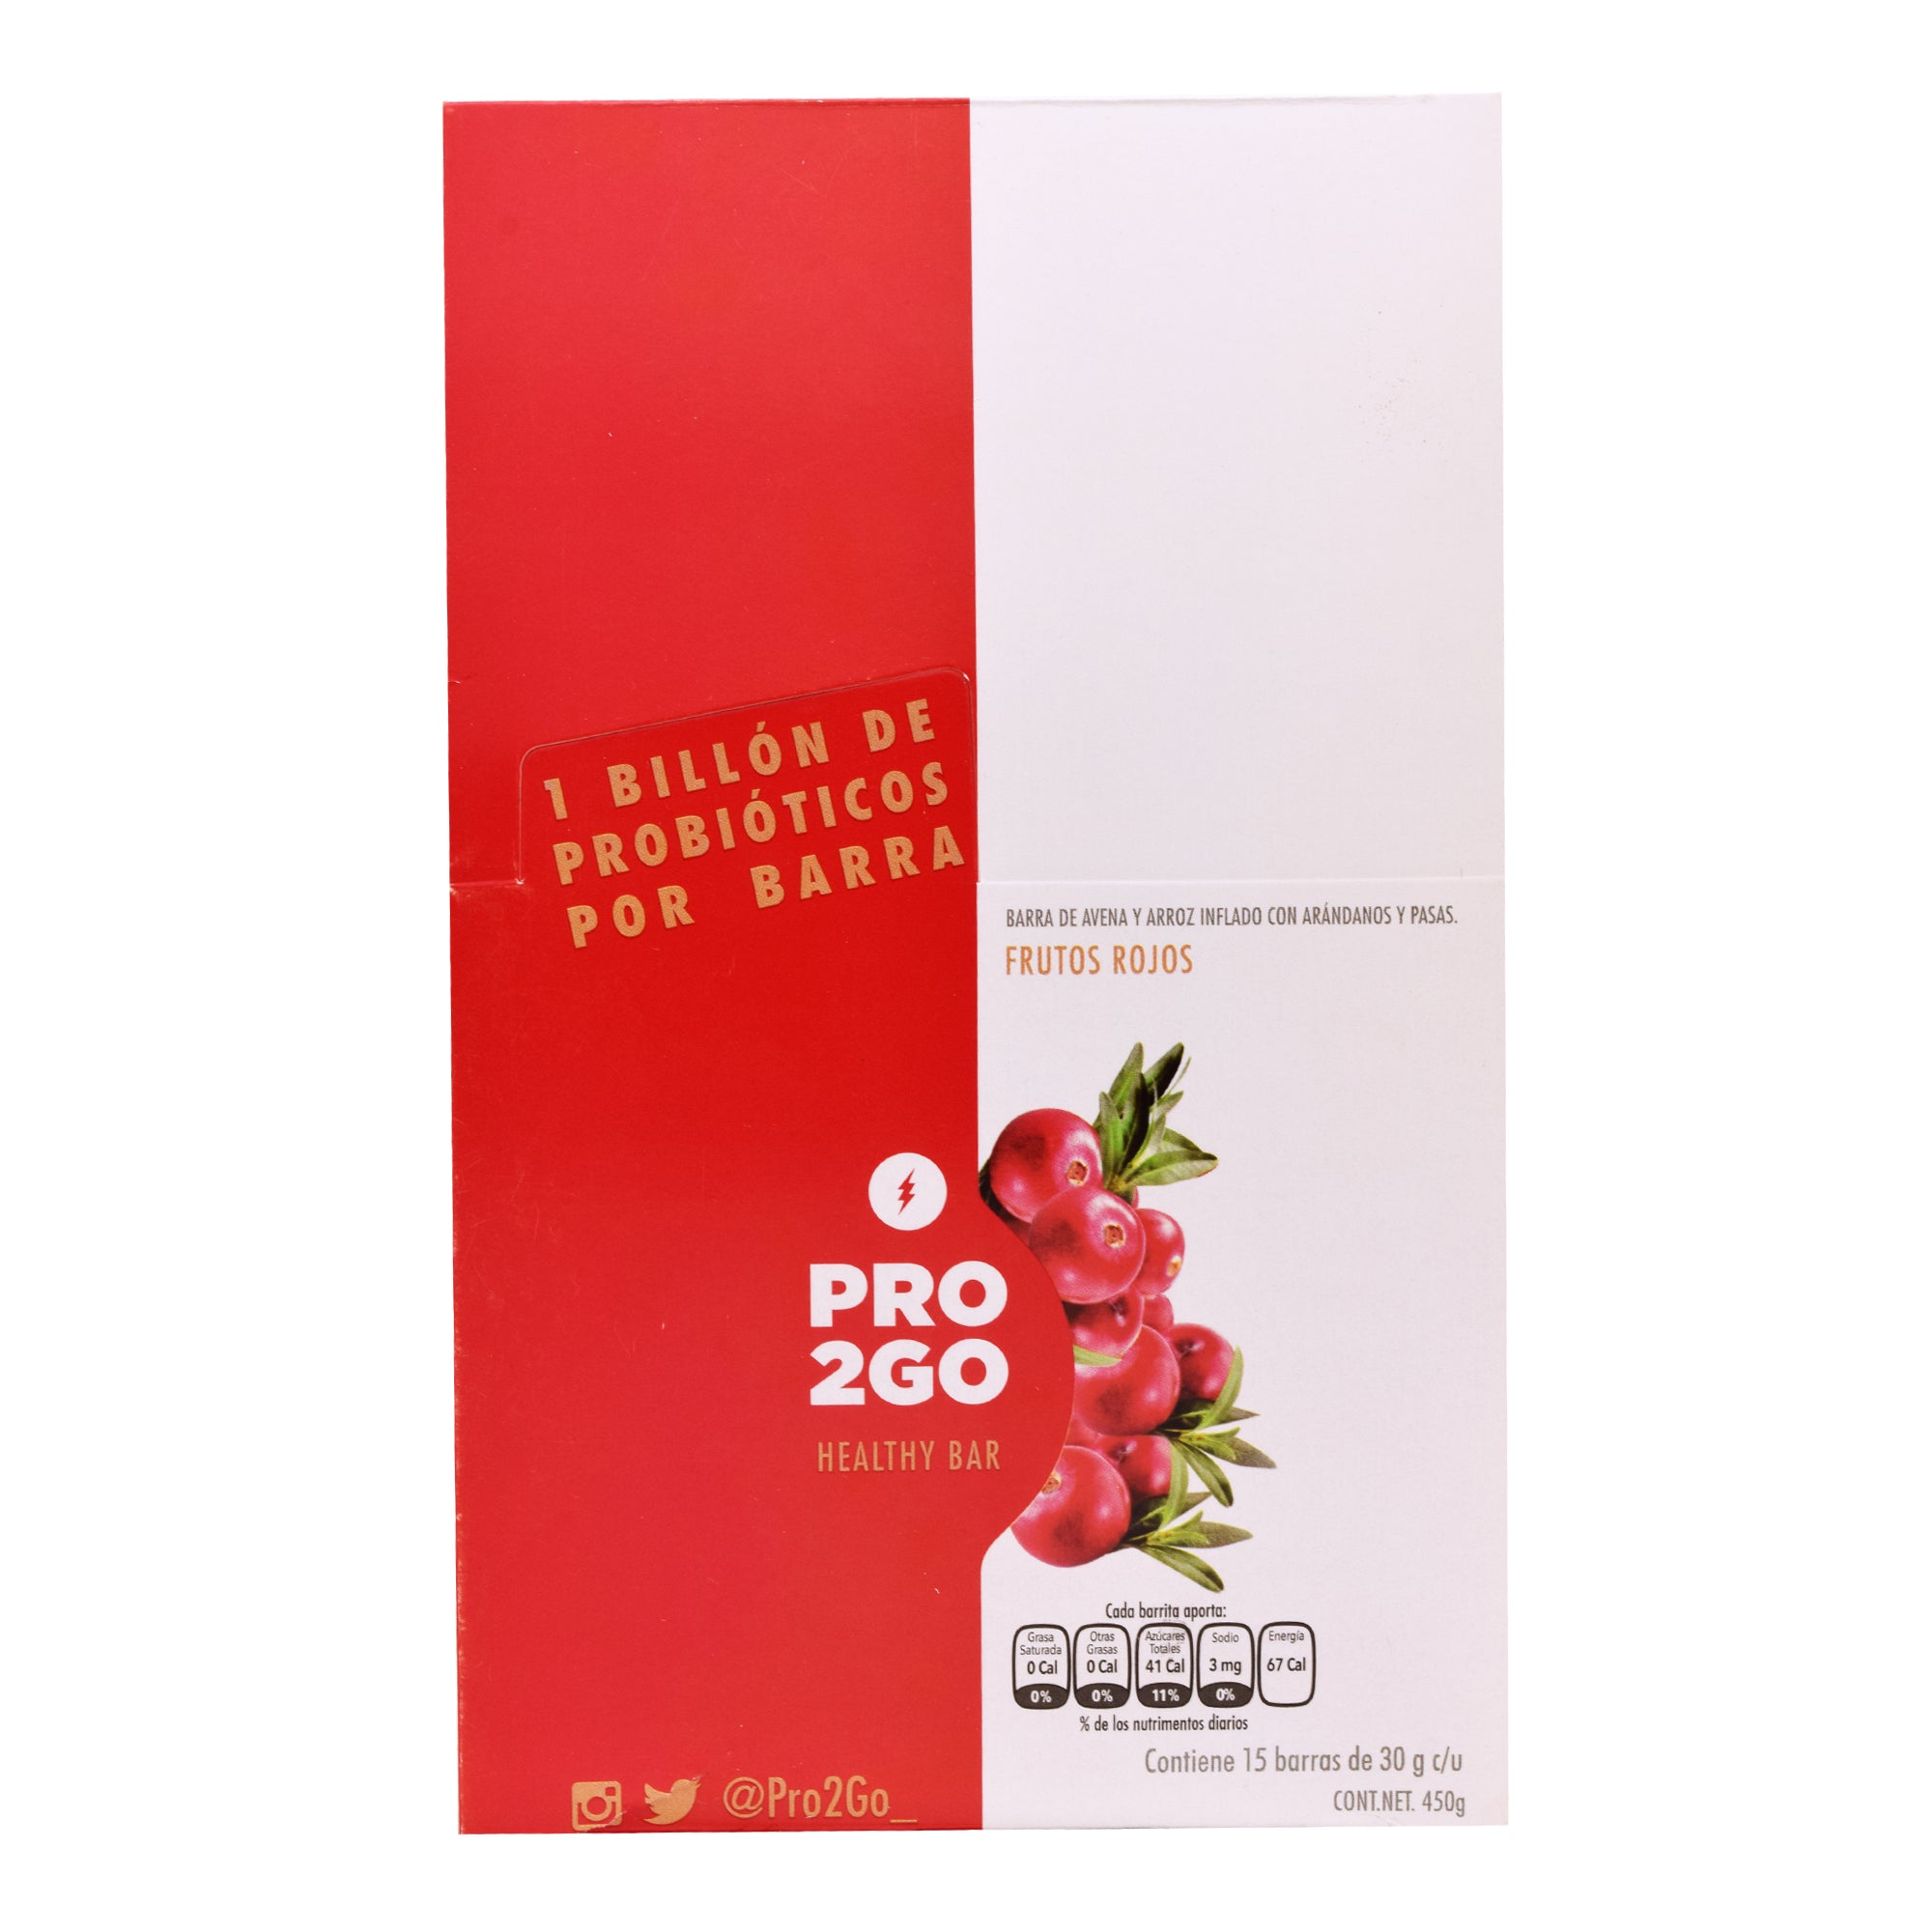 Barra de avena y futos rojos con probioticos 30 g (PAQUETE 15)